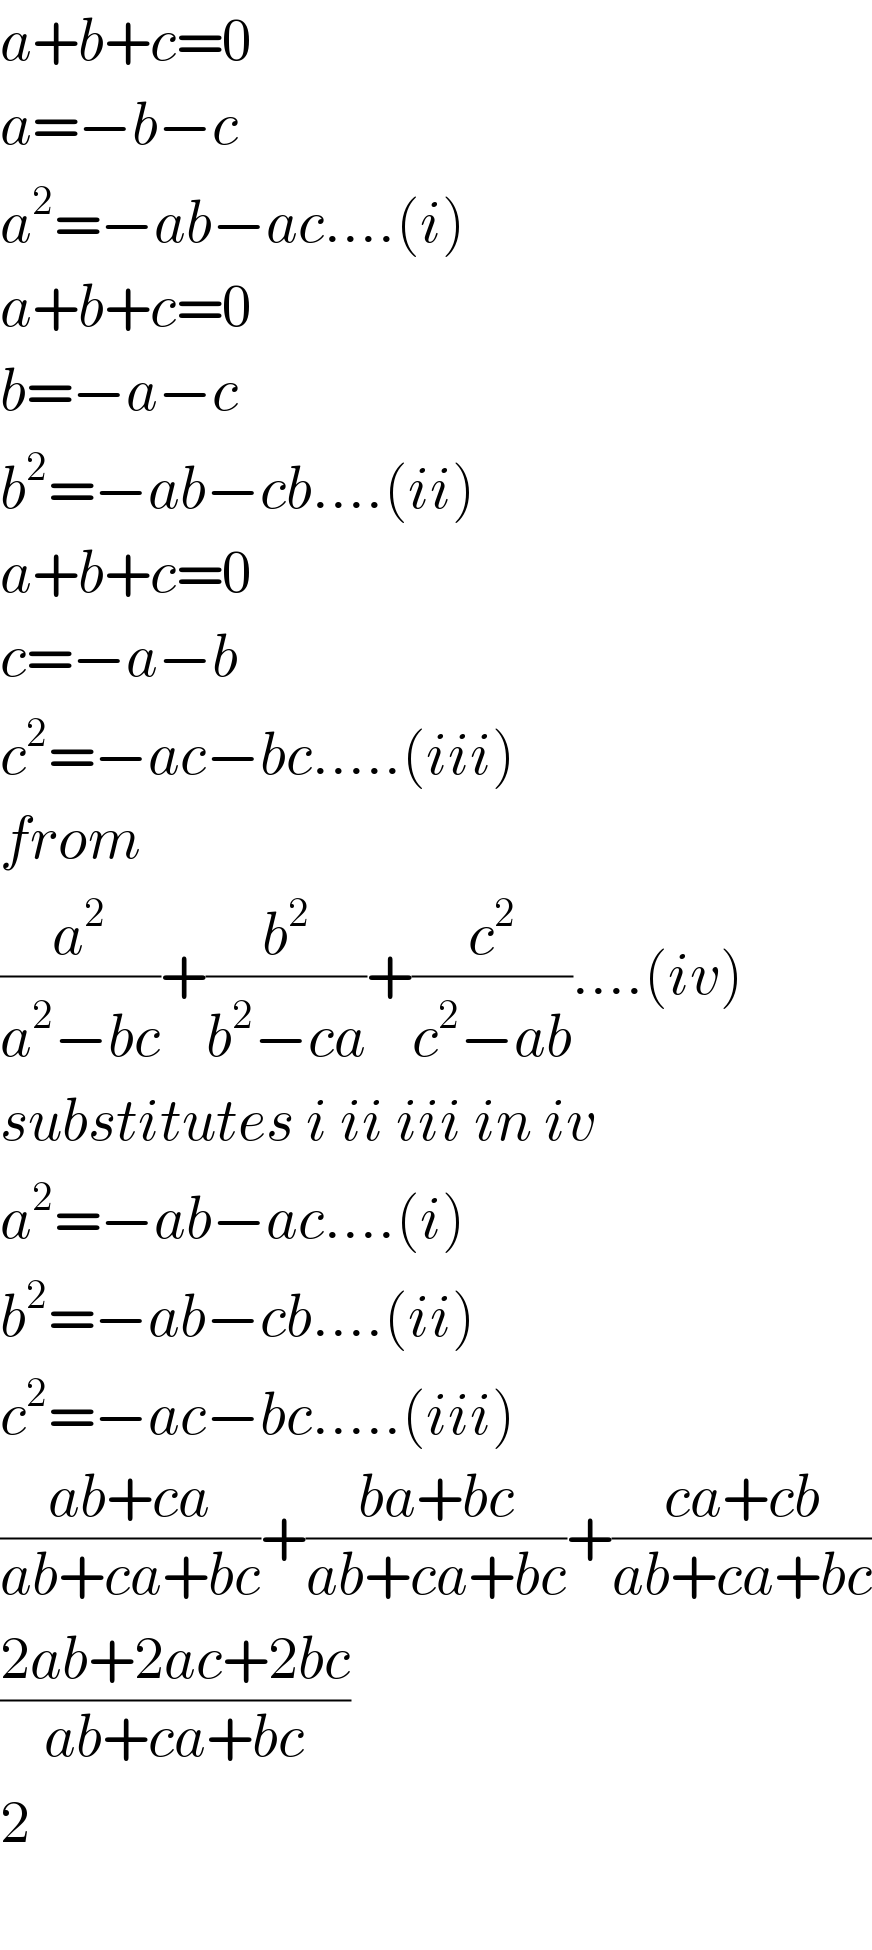 a+b+c=0  a=−b−c  a^2 =−ab−ac....(i)  a+b+c=0  b=−a−c  b^2 =−ab−cb....(ii)  a+b+c=0  c=−a−b  c^2 =−ac−bc.....(iii)  from  (a^2 /(a^2 −bc))+(b^2 /(b^2 −ca))+(c^2 /(c^2 −ab))....(iv)  substitutes i ii iii in iv  a^2 =−ab−ac....(i)  b^2 =−ab−cb....(ii)  c^2 =−ac−bc.....(iii)  ((ab+ca)/(ab+ca+bc))+((ba+bc)/(ab+ca+bc))+((ca+cb)/(ab+ca+bc))  ((2ab+2ac+2bc)/(ab+ca+bc))  2    